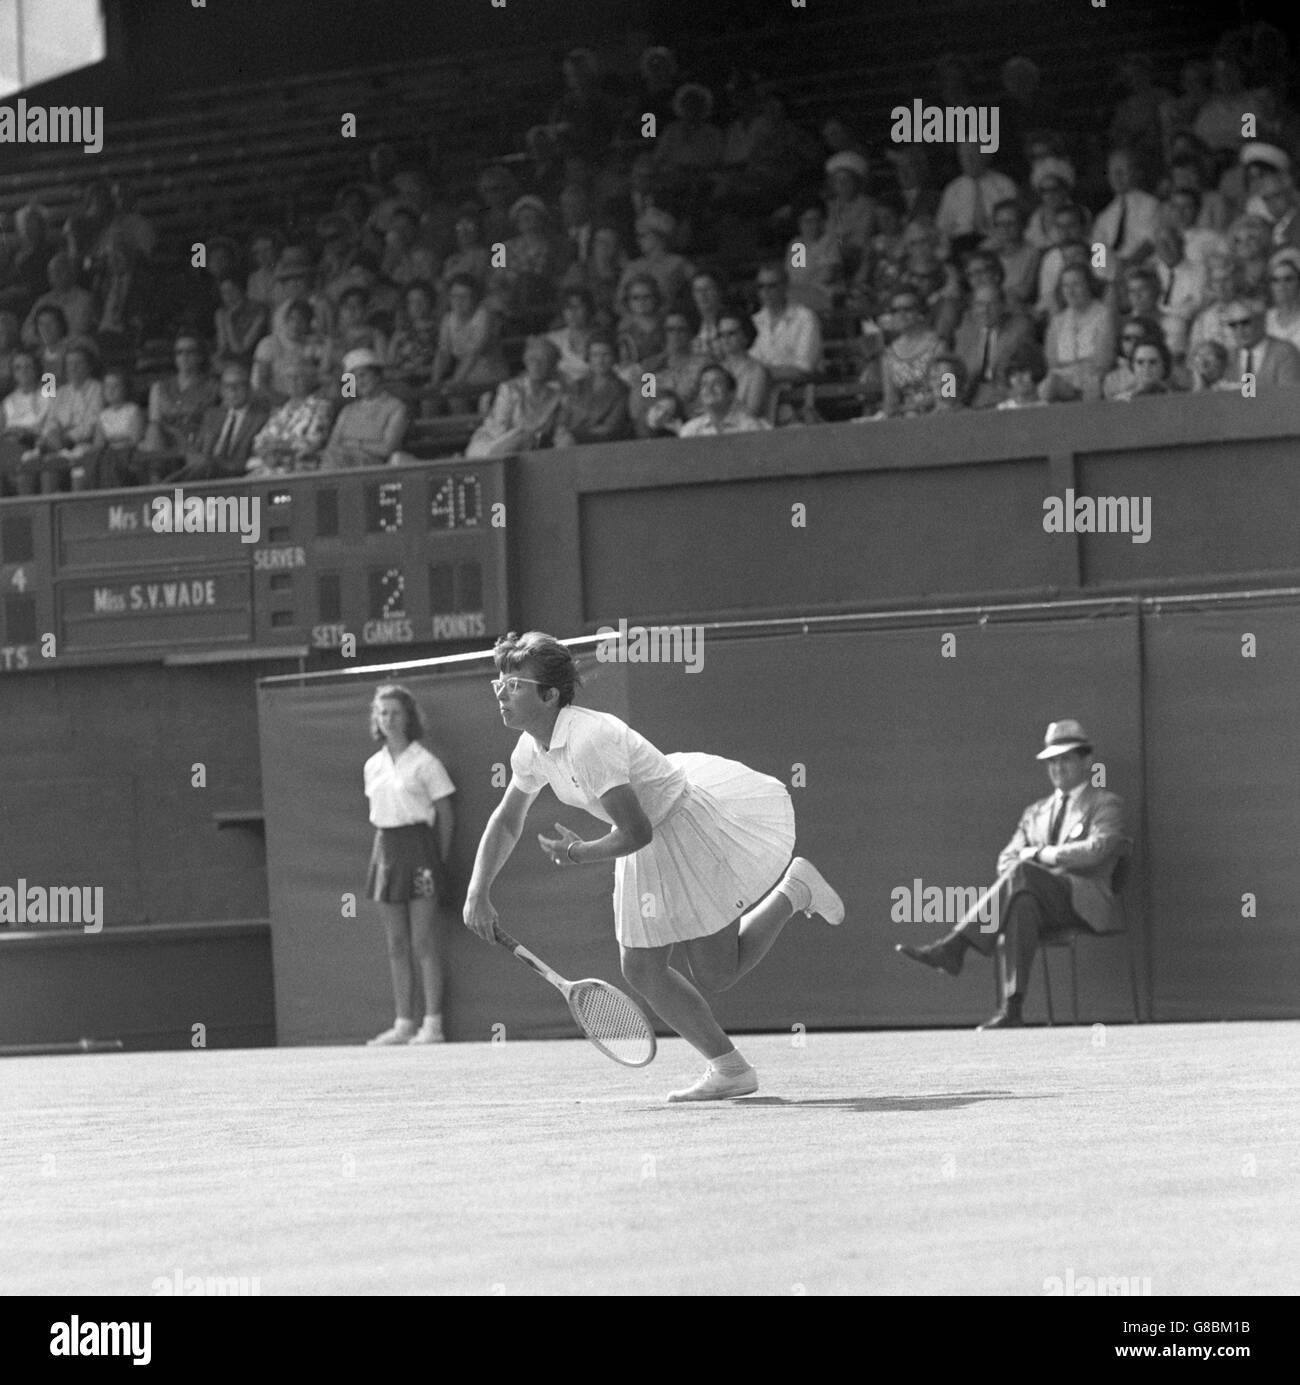 Billie Jean King, d'Amérique, pendant le match de la coupe Wightman contre Virginia Wade en Grande-Bretagne à Wimbledon, Londres. Billie Jean remporte le match 6-2, 6-3. Banque D'Images